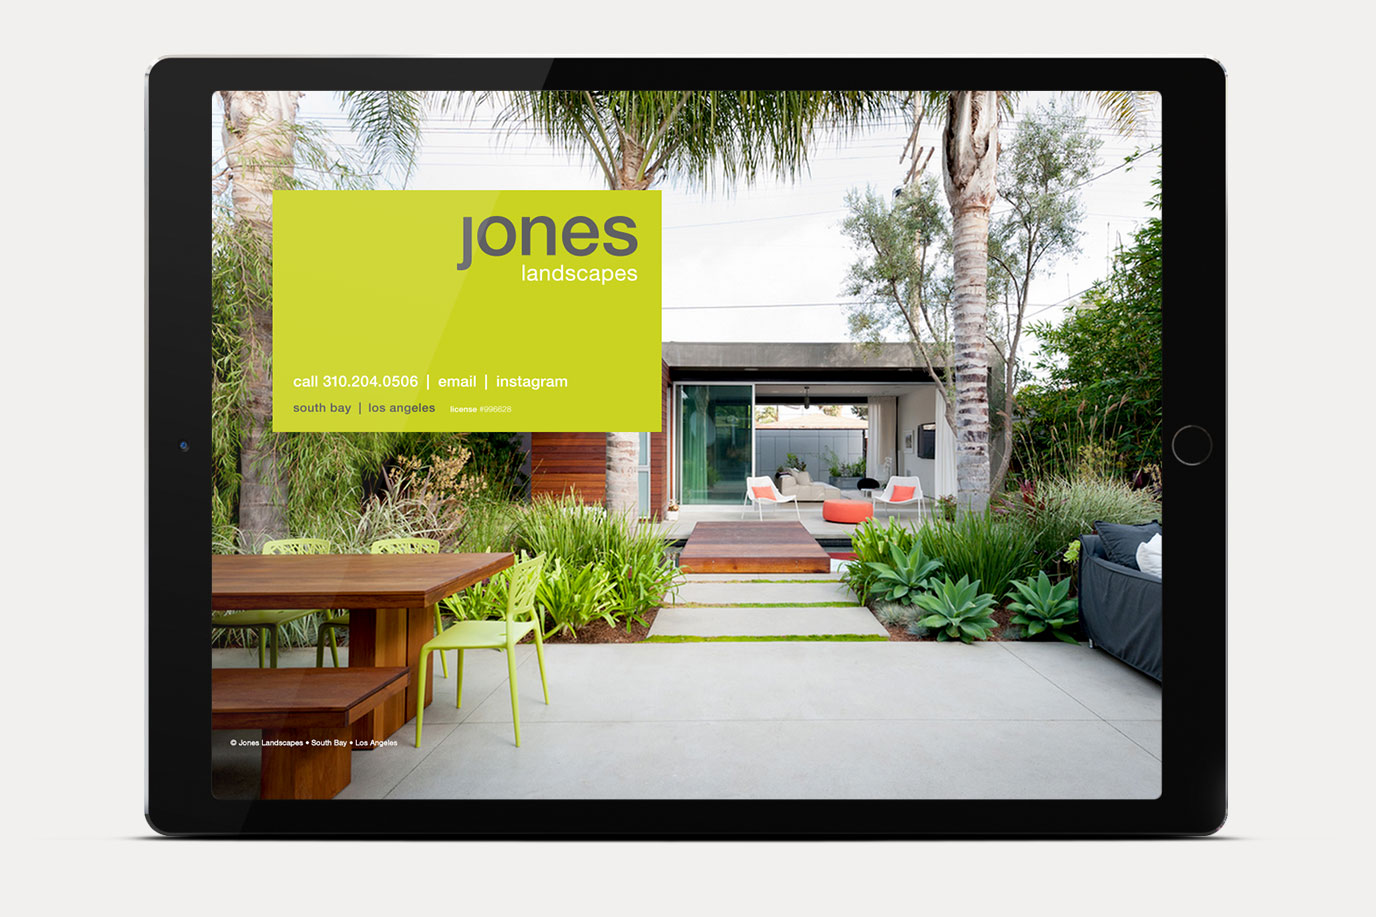 Jones Landscapes website home page